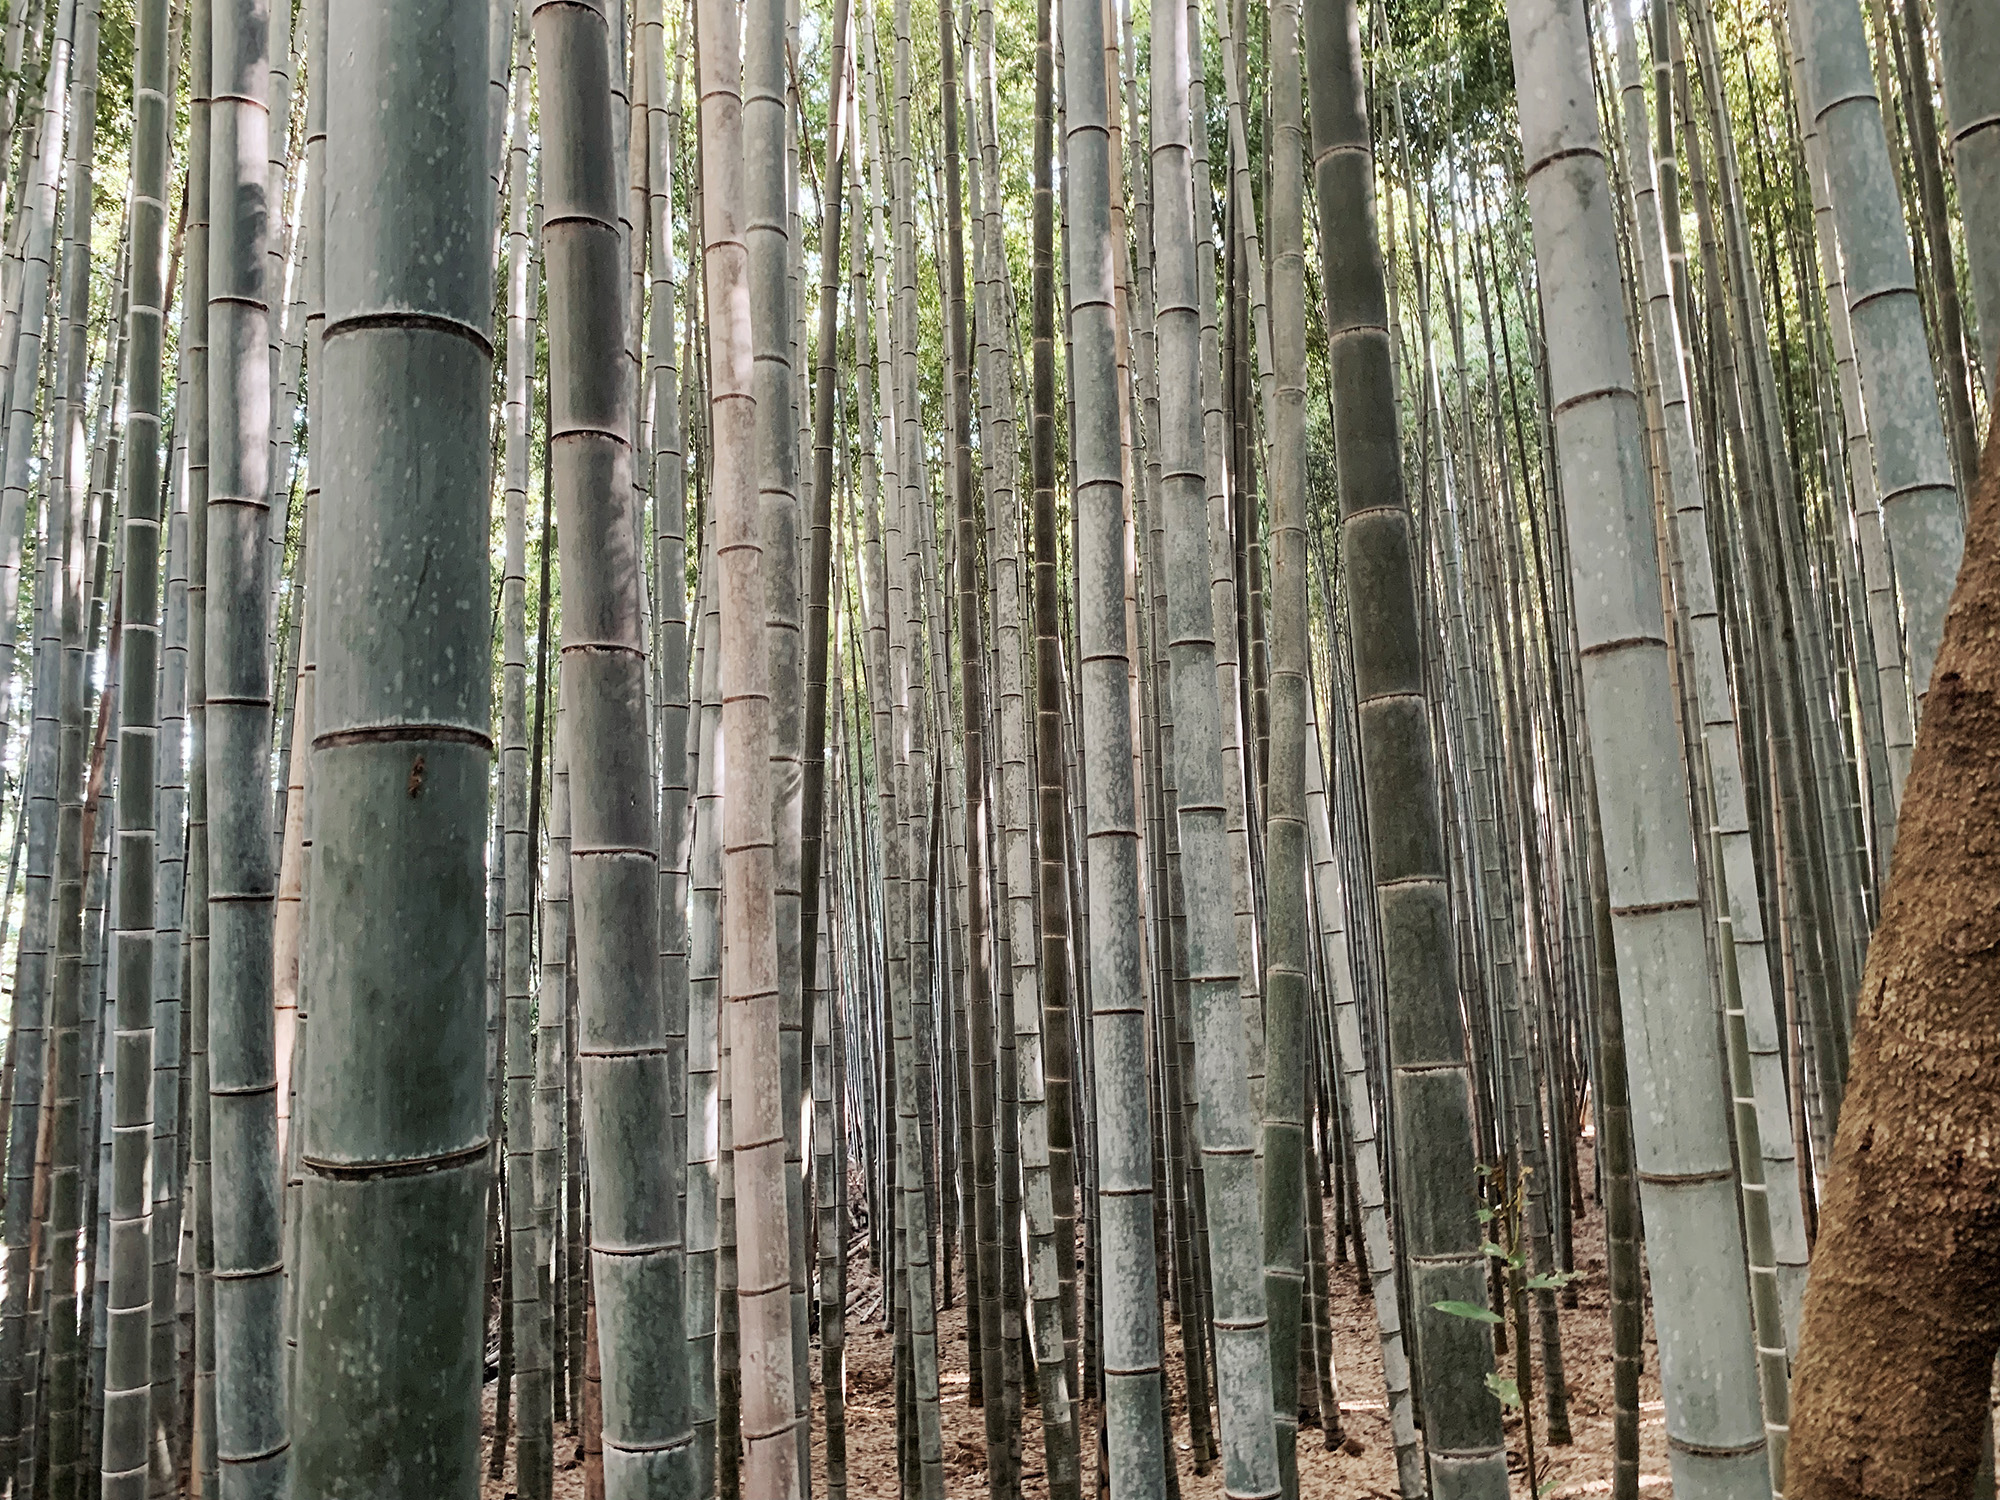 Kyoto Guide - Arashiyama Bamboo Grove